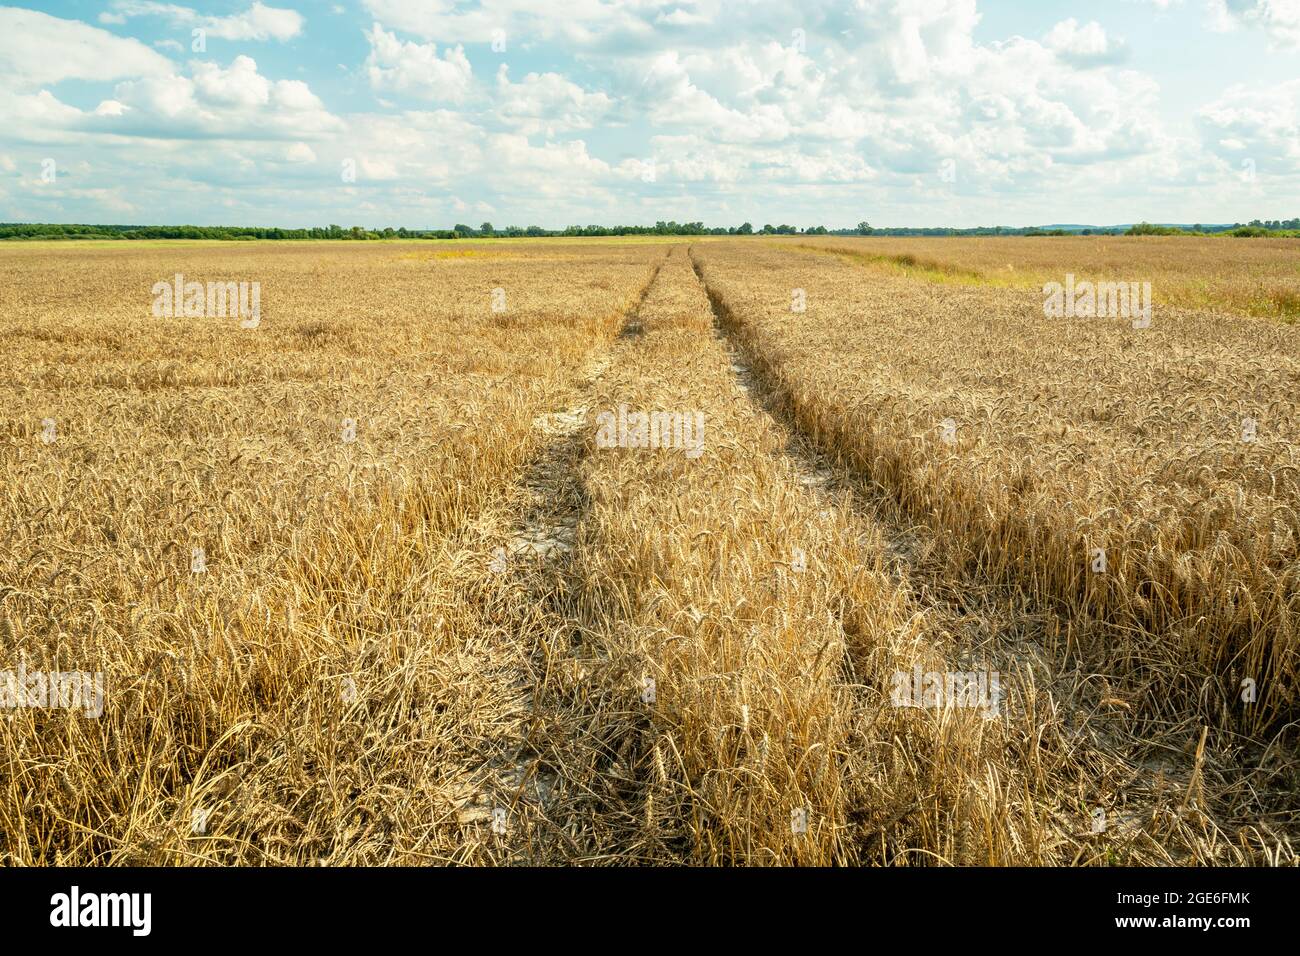 Technological path through the grain, Czulczyce, Poland Stock Photo